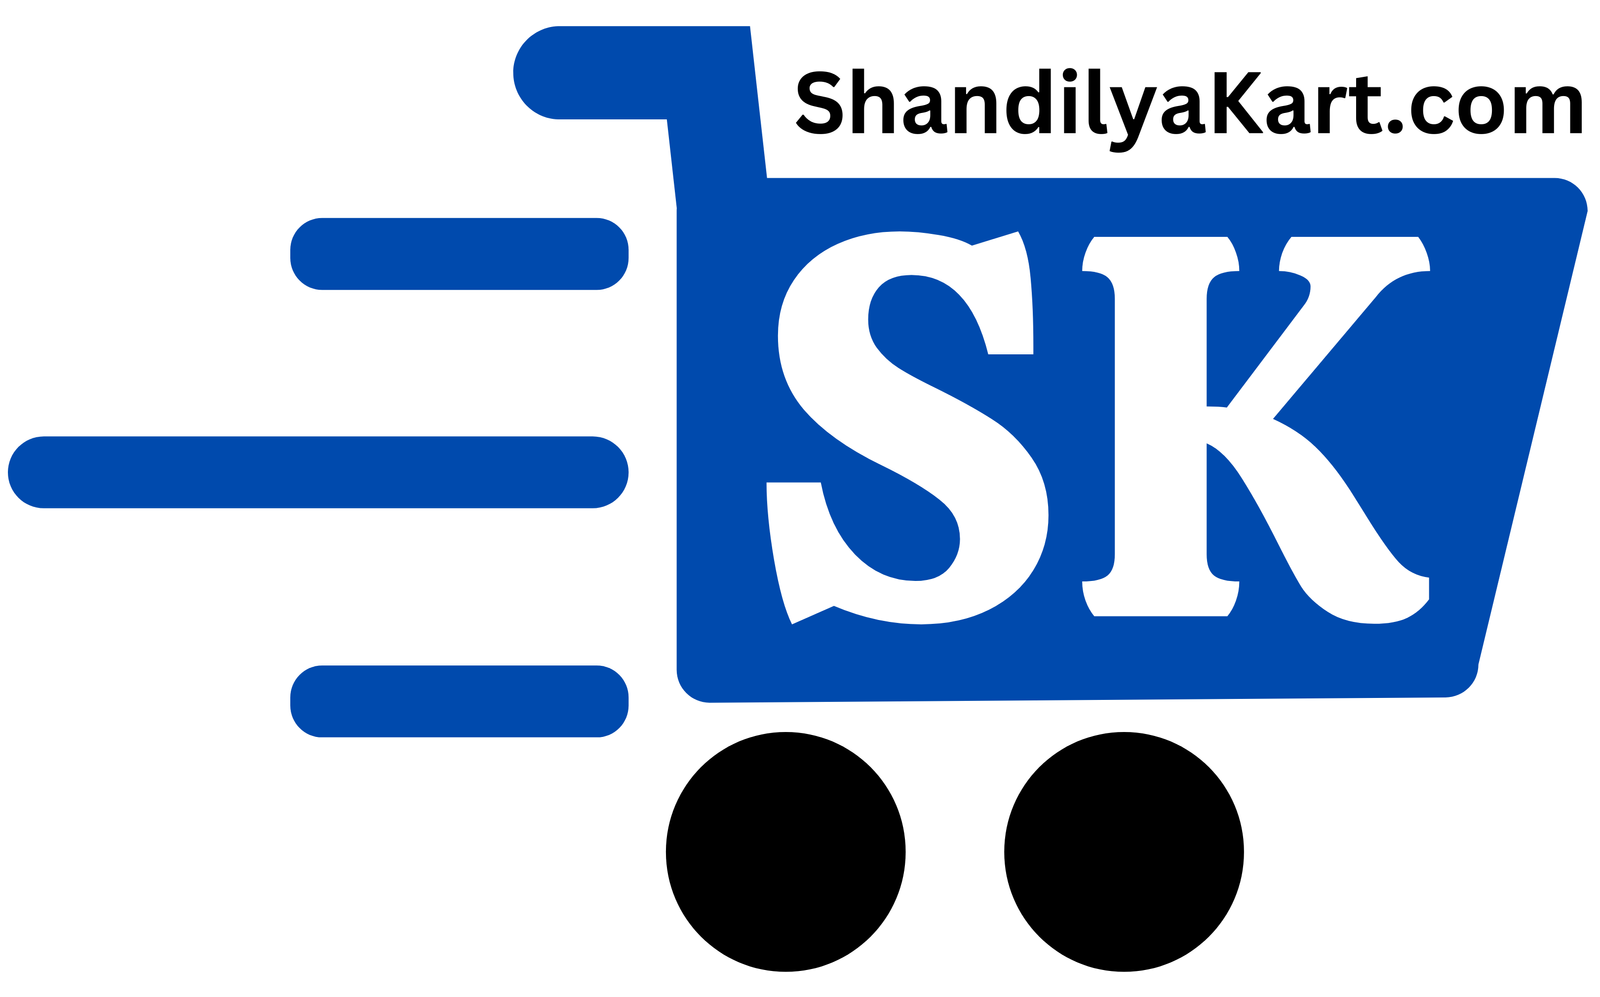 Shandilya Kart